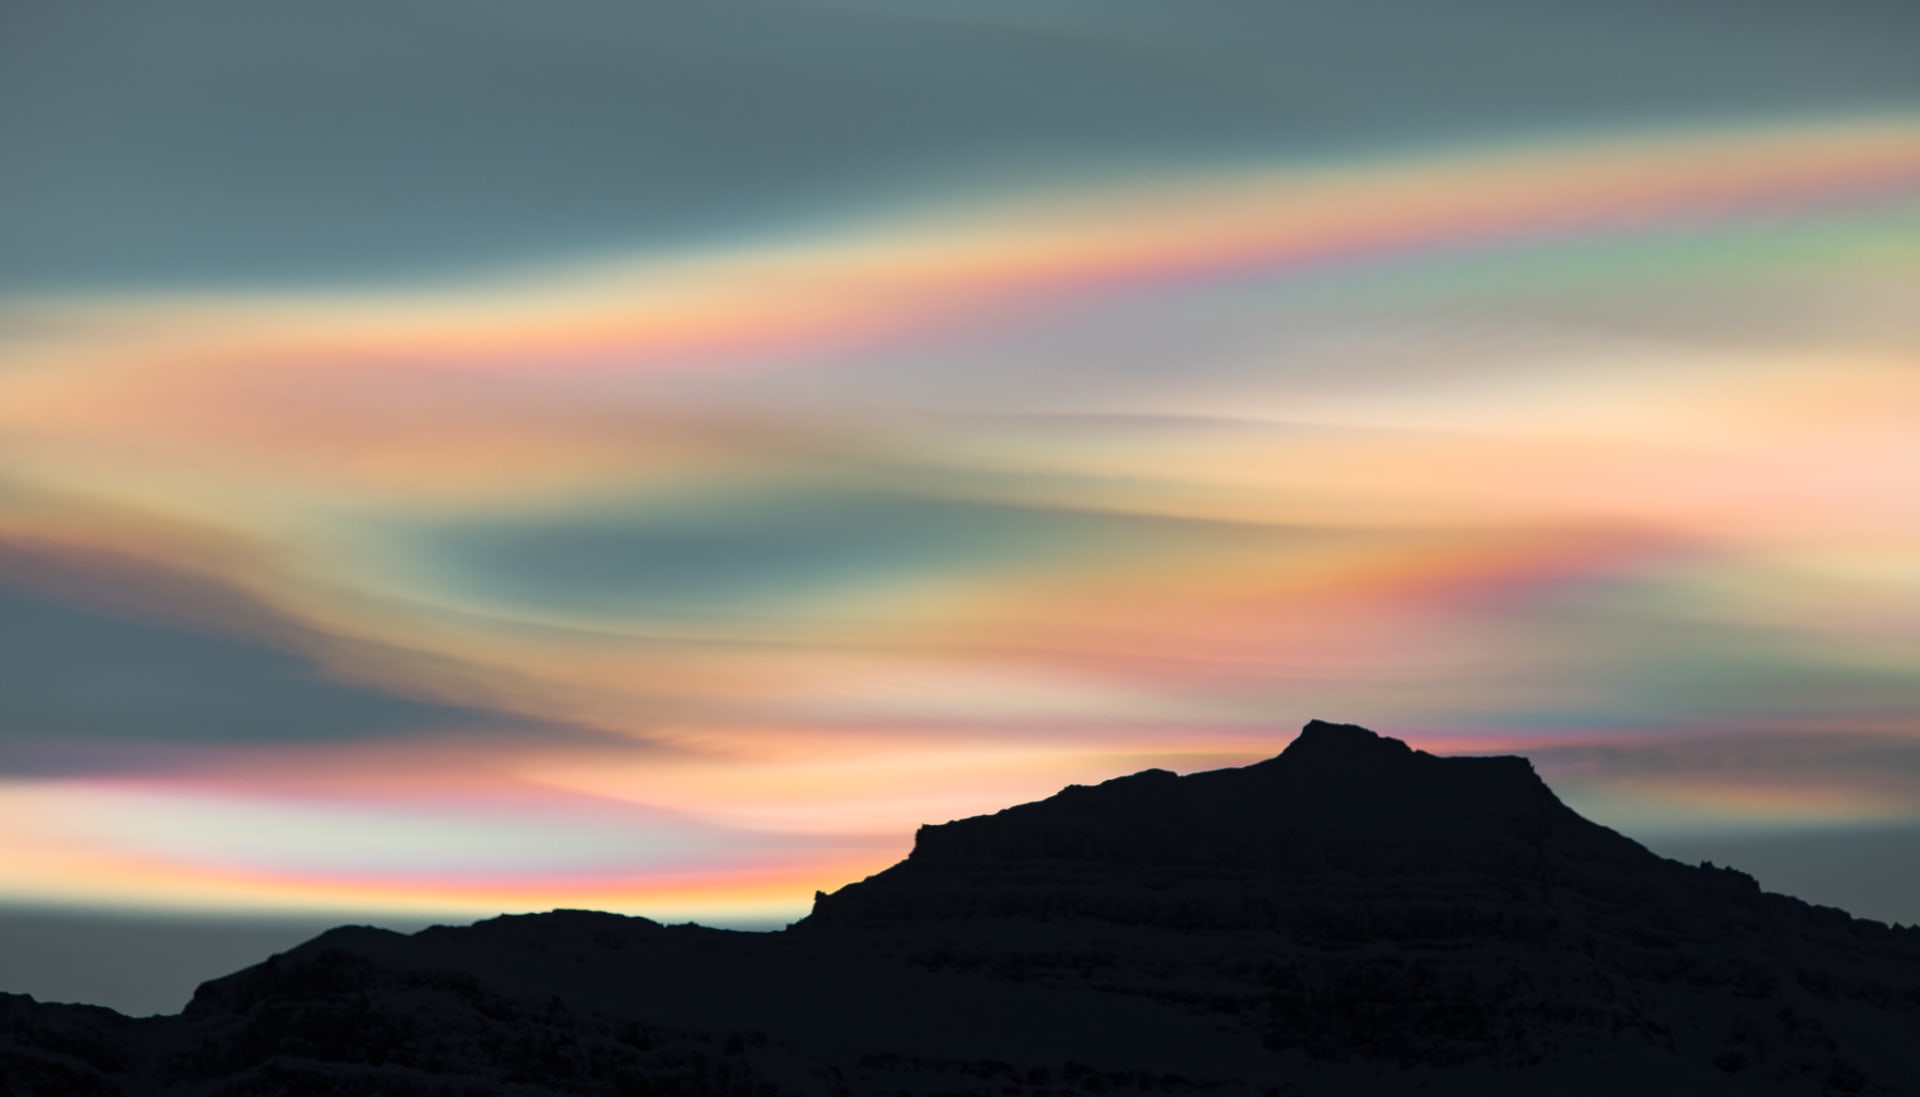 يشار إليها بـ"السحب اللؤلؤية".. مصورة ترصد ظاهرة فاتنة في سماء آيسلندا